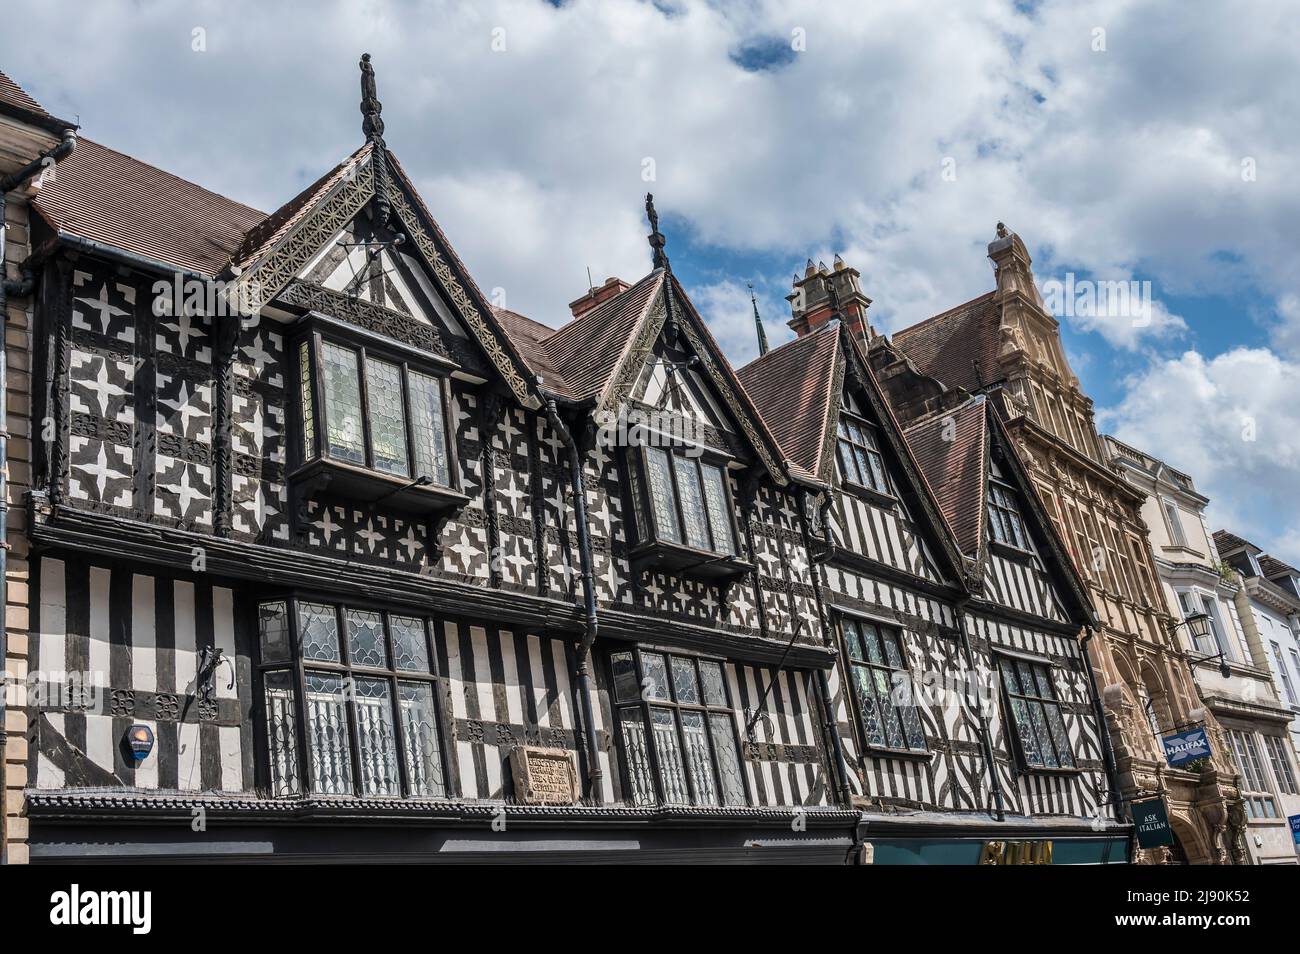 L'image est de scènes de rue générales colorées de Shrewsbury avec leurs agréables bâtiments de style géorgien Banque D'Images